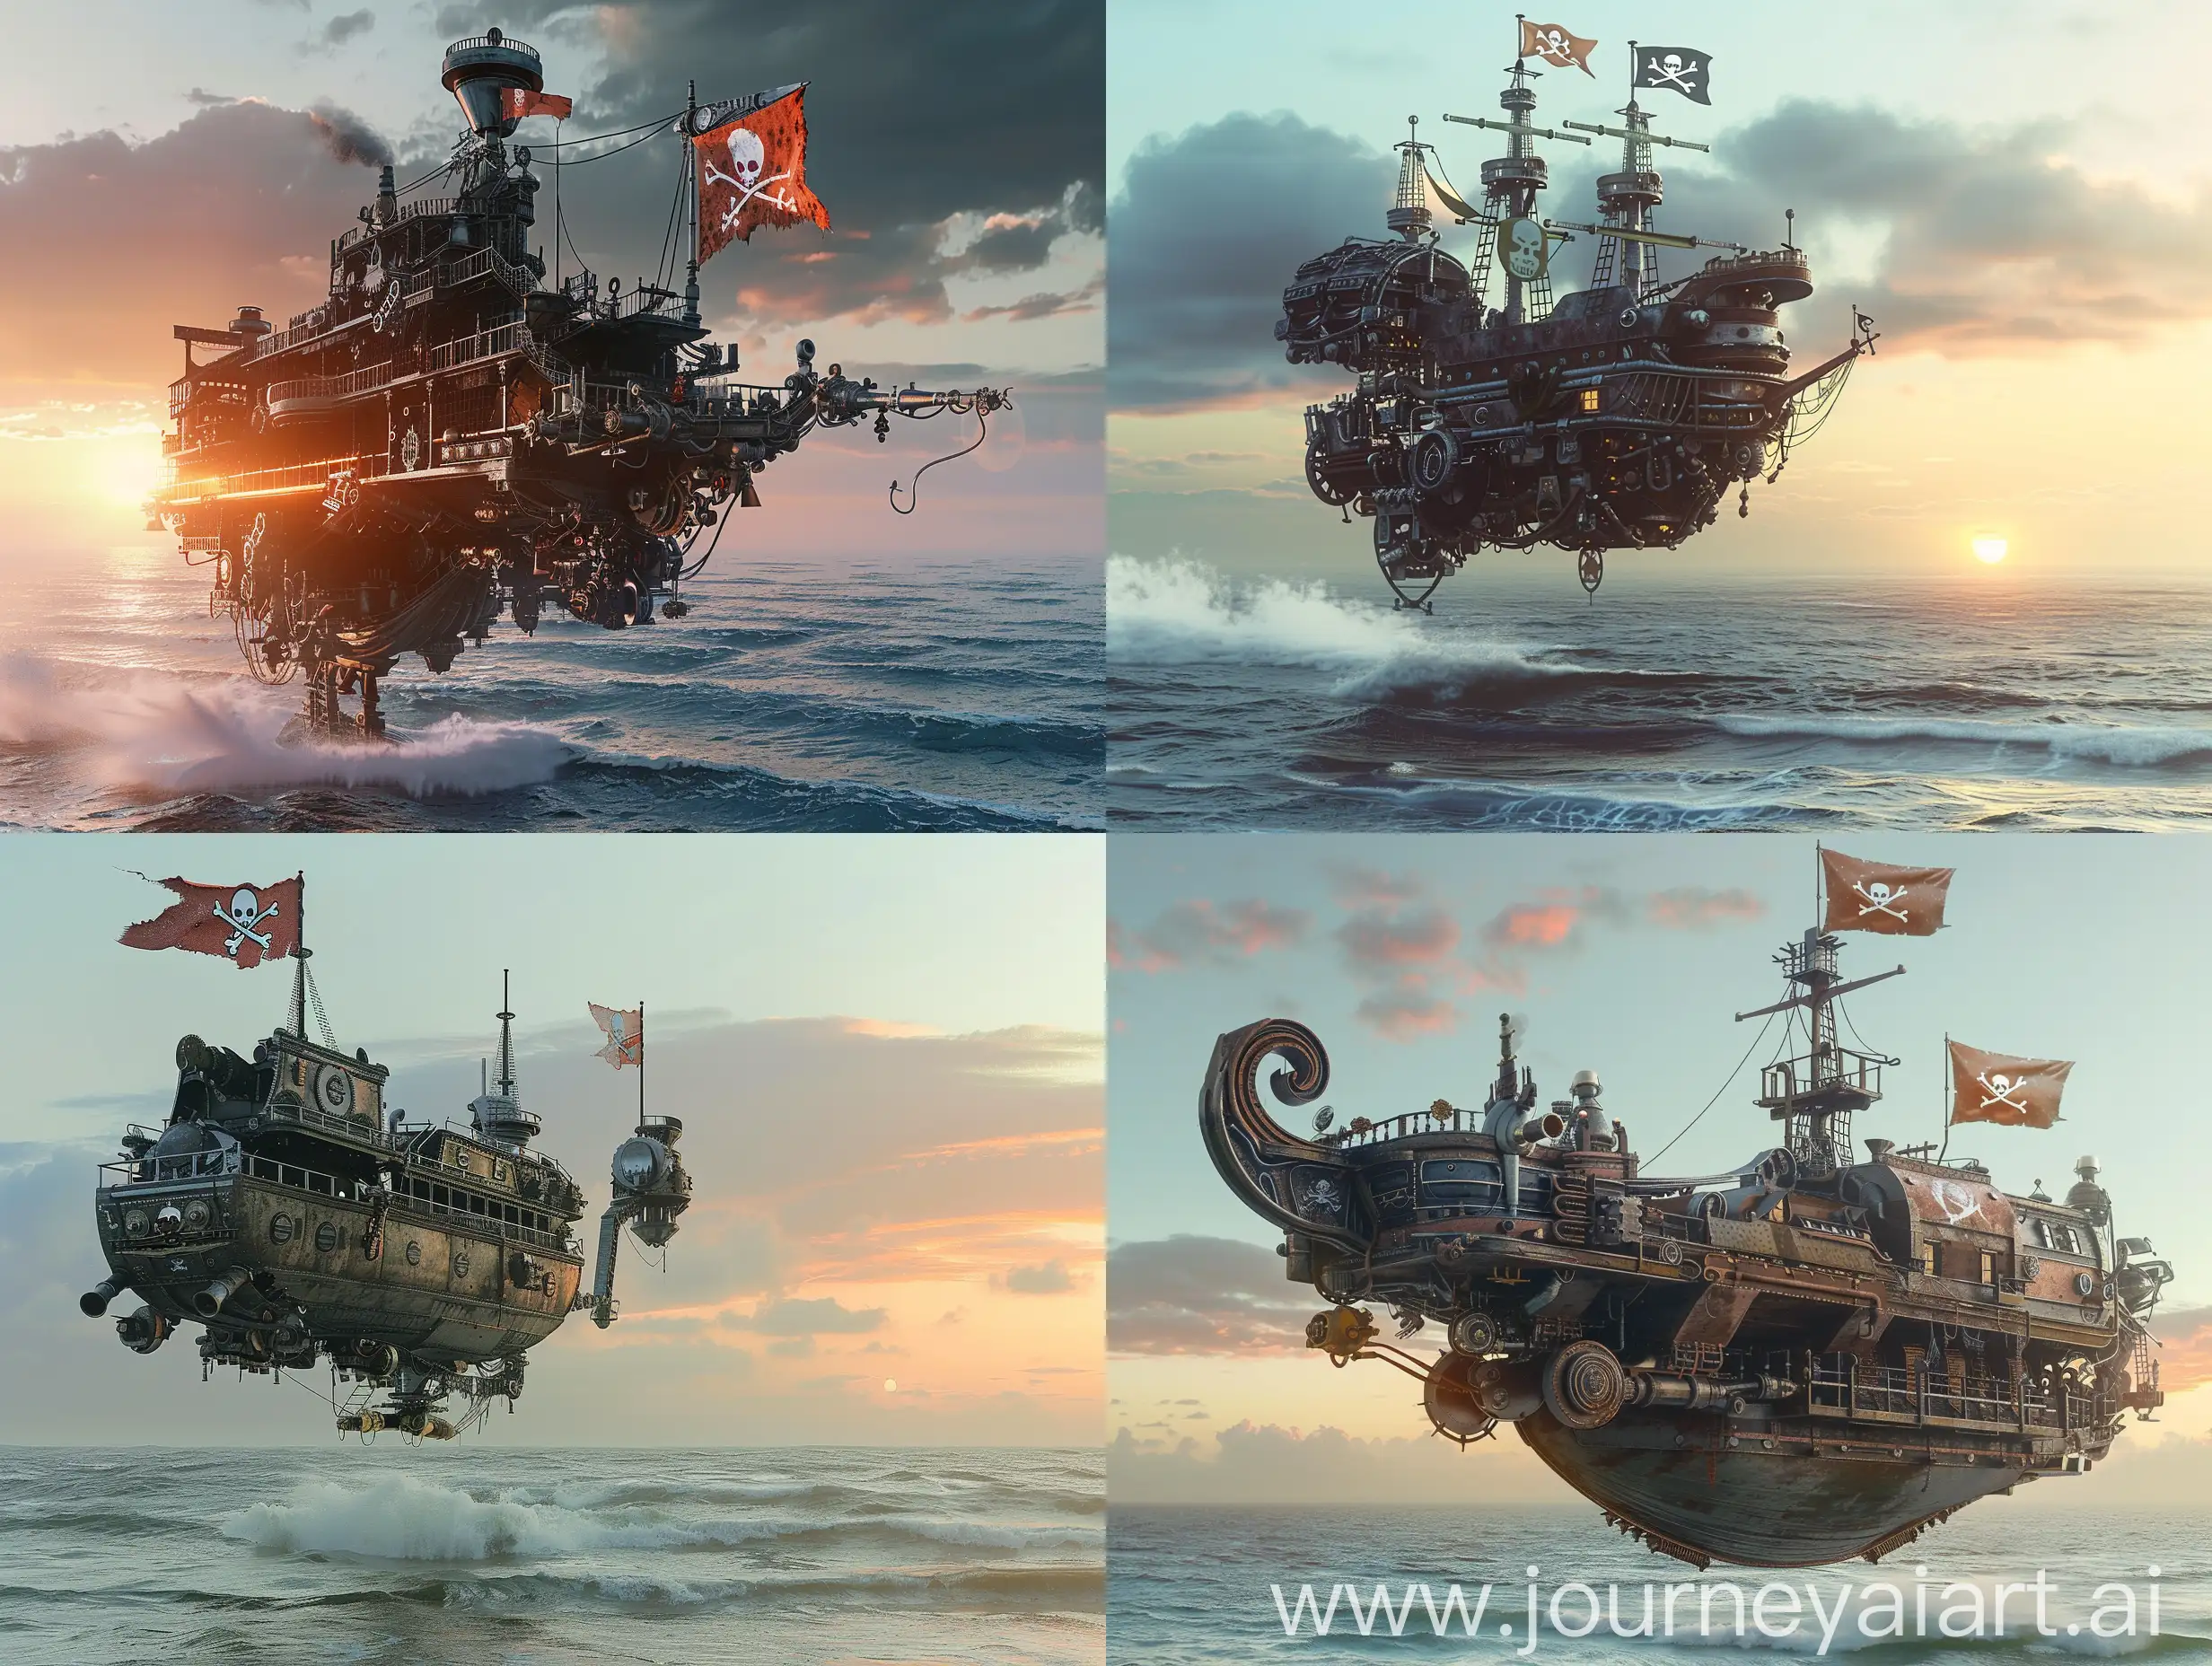 уплывающий механизированный корабль с пиратским флагом, буйный океан, ясная и облачная погода, слабый закат солнца вдали